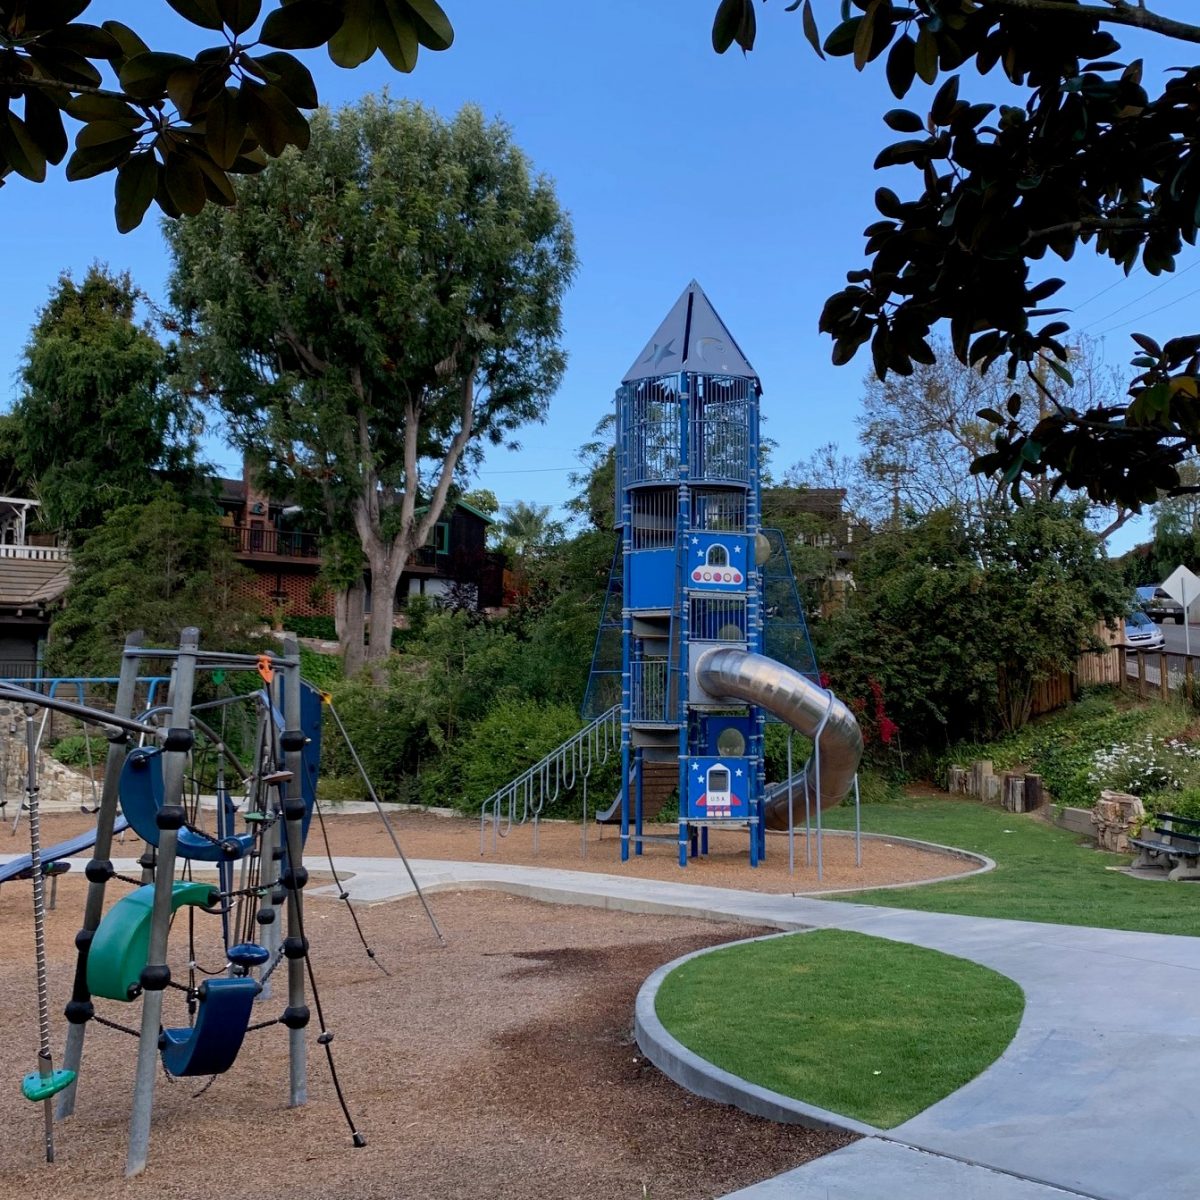 Bluebird Park – Go Park Play